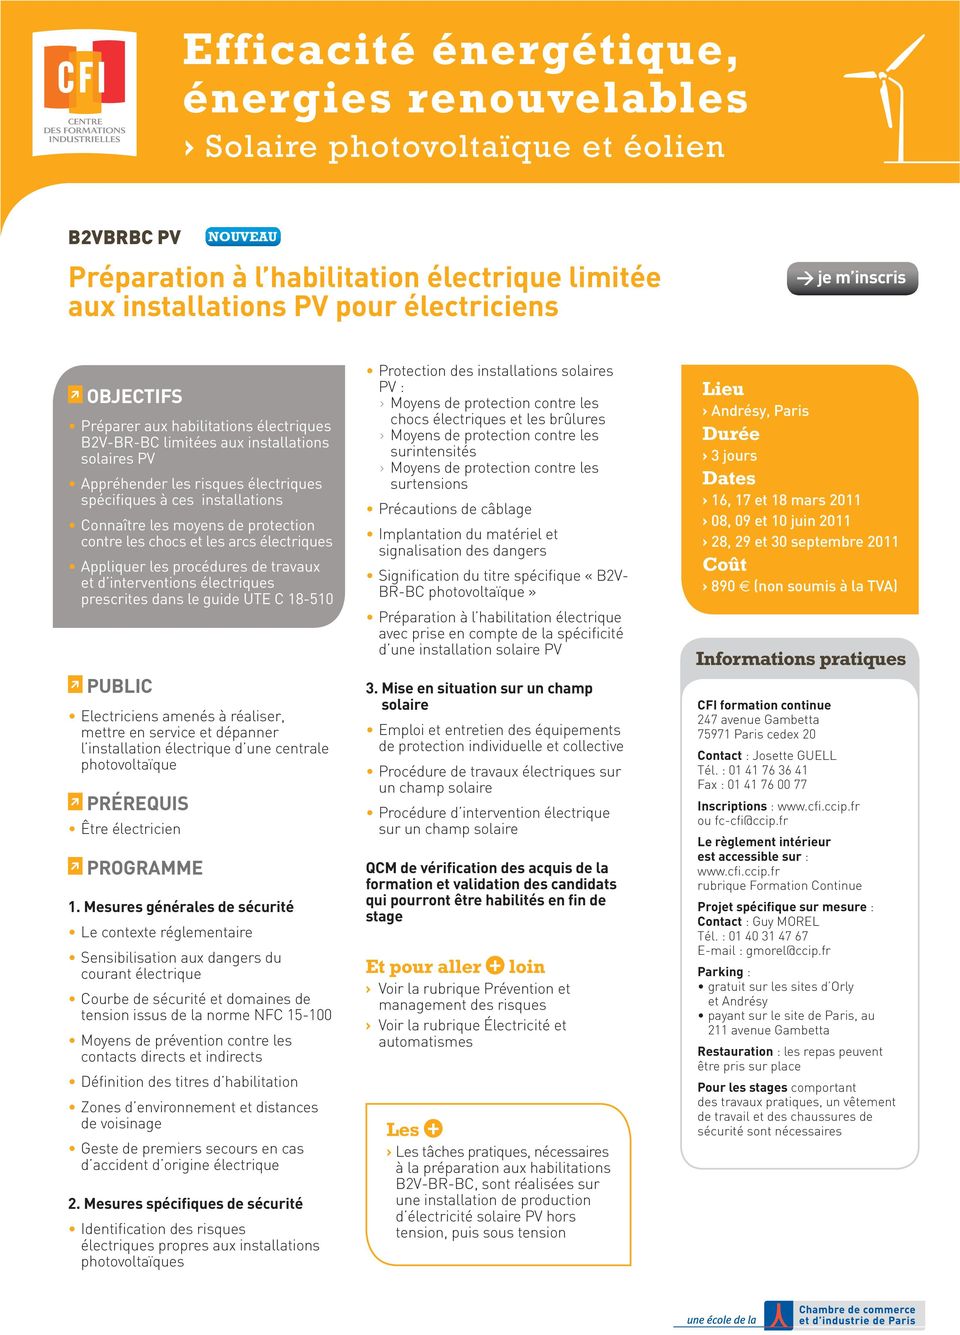 les arcs électriques Appliquer les procédures de travaux et d interventions électriques prescrites dans le guide UTE C 18-510 Electriciens amenés à réaliser, mettre en service et dépanner l